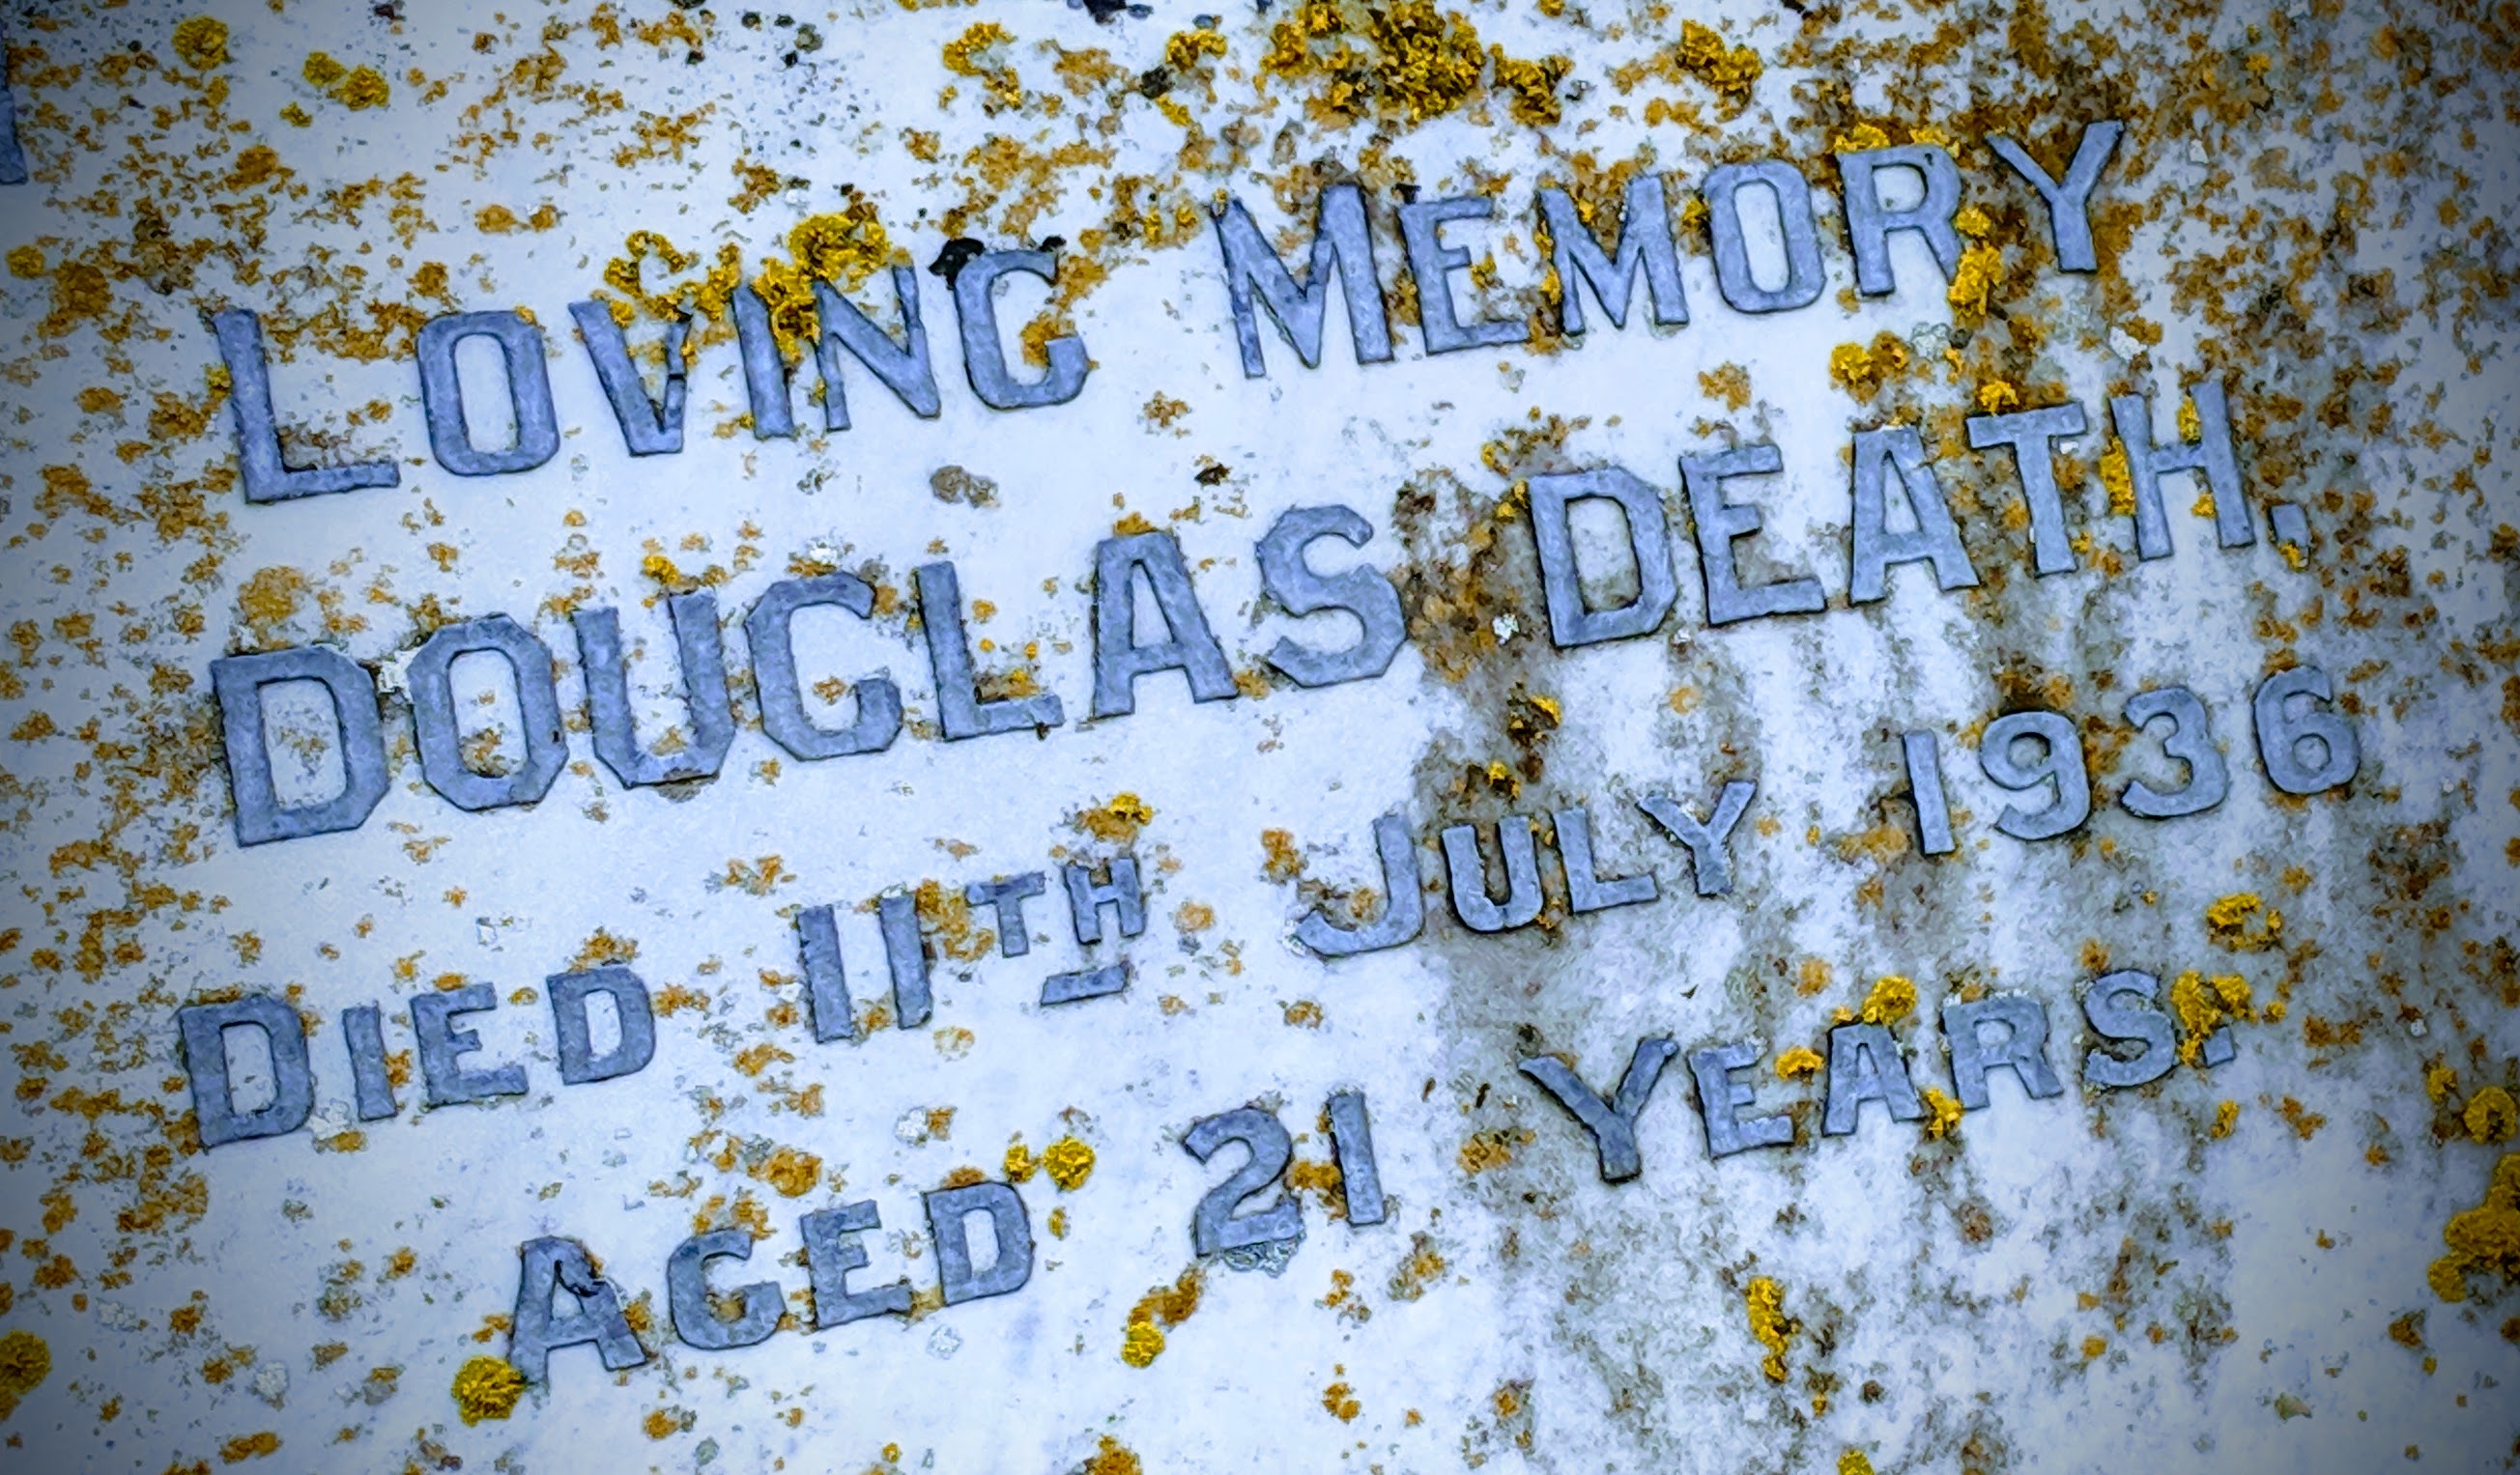 Gravestone for Douglas Death, 1936